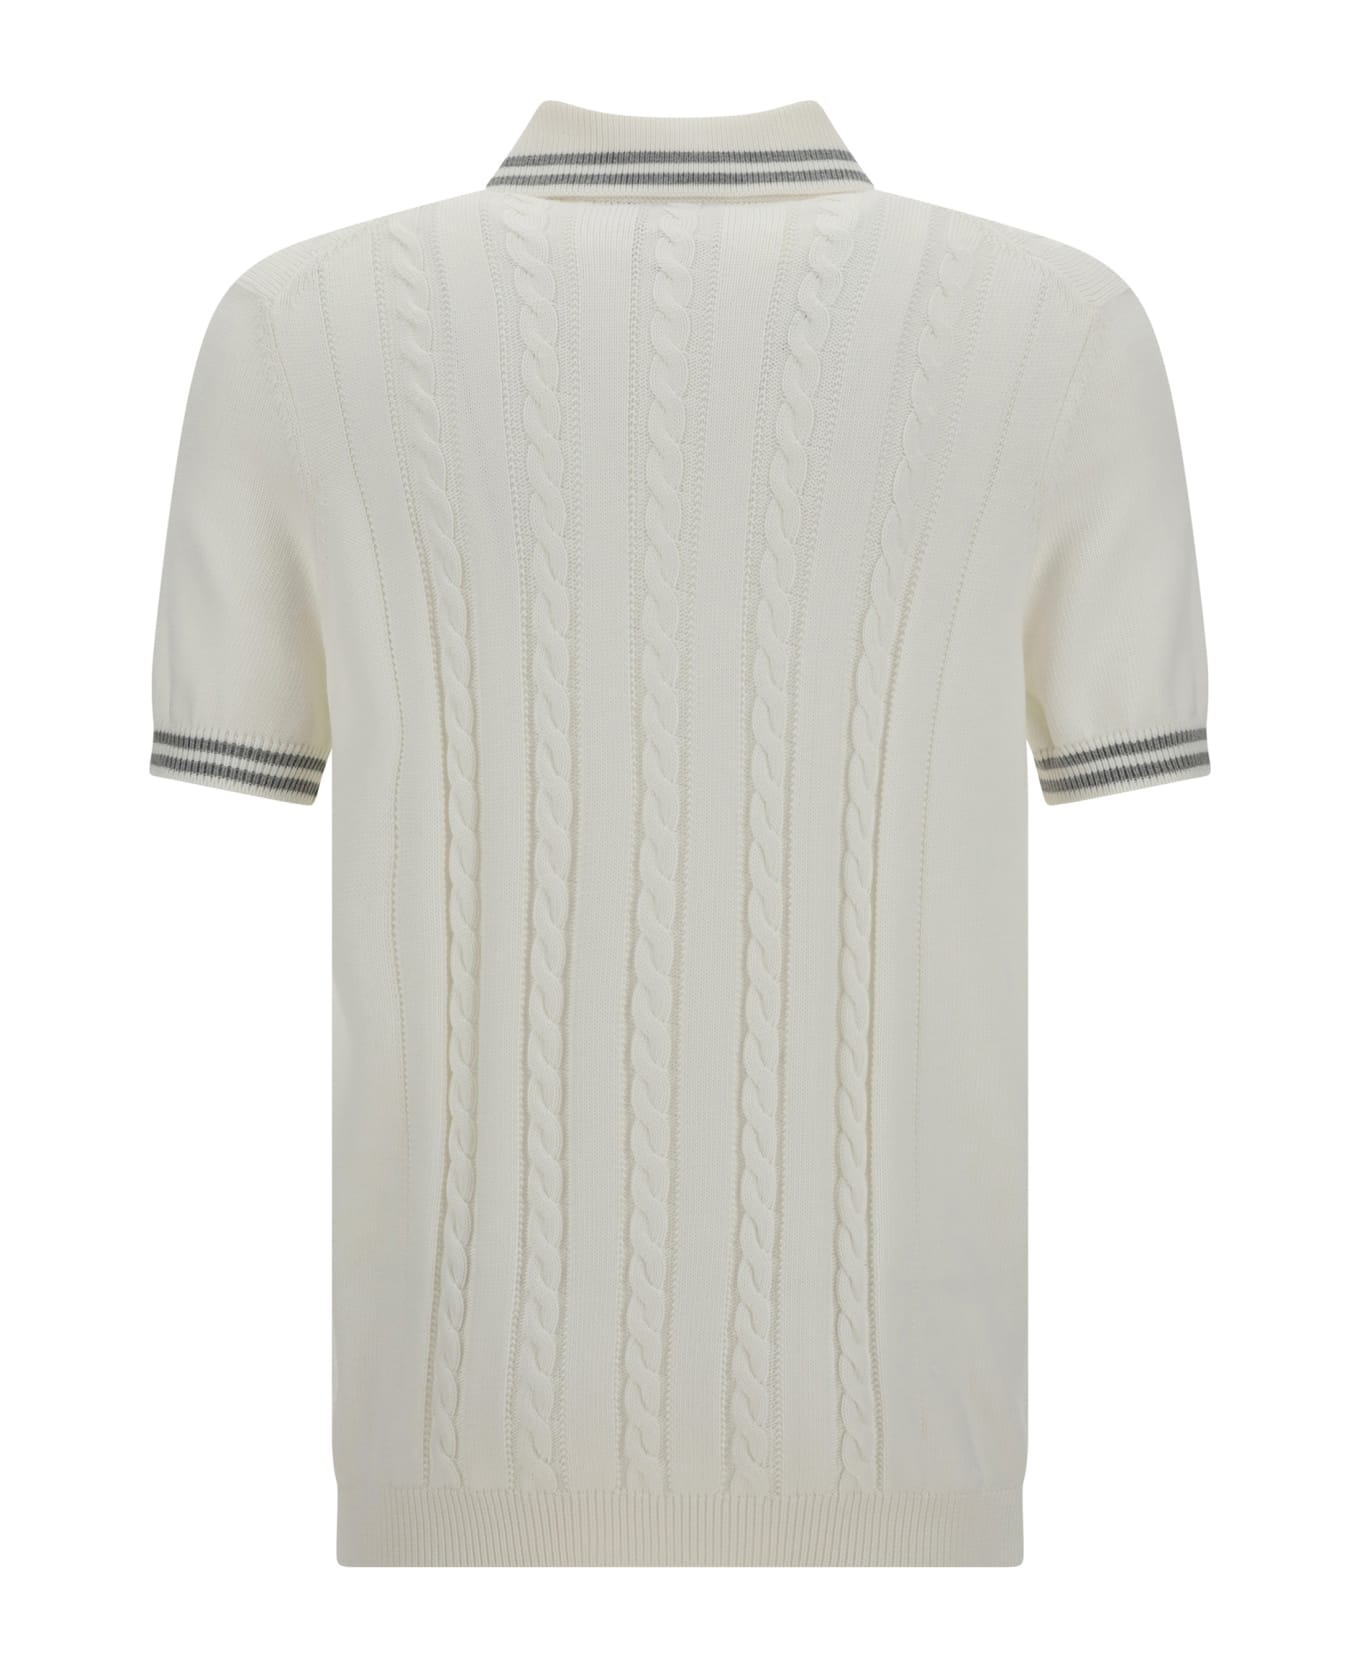 Brunello Cucinelli Polo Shirt - Panama+grigio Chiaro+bianco